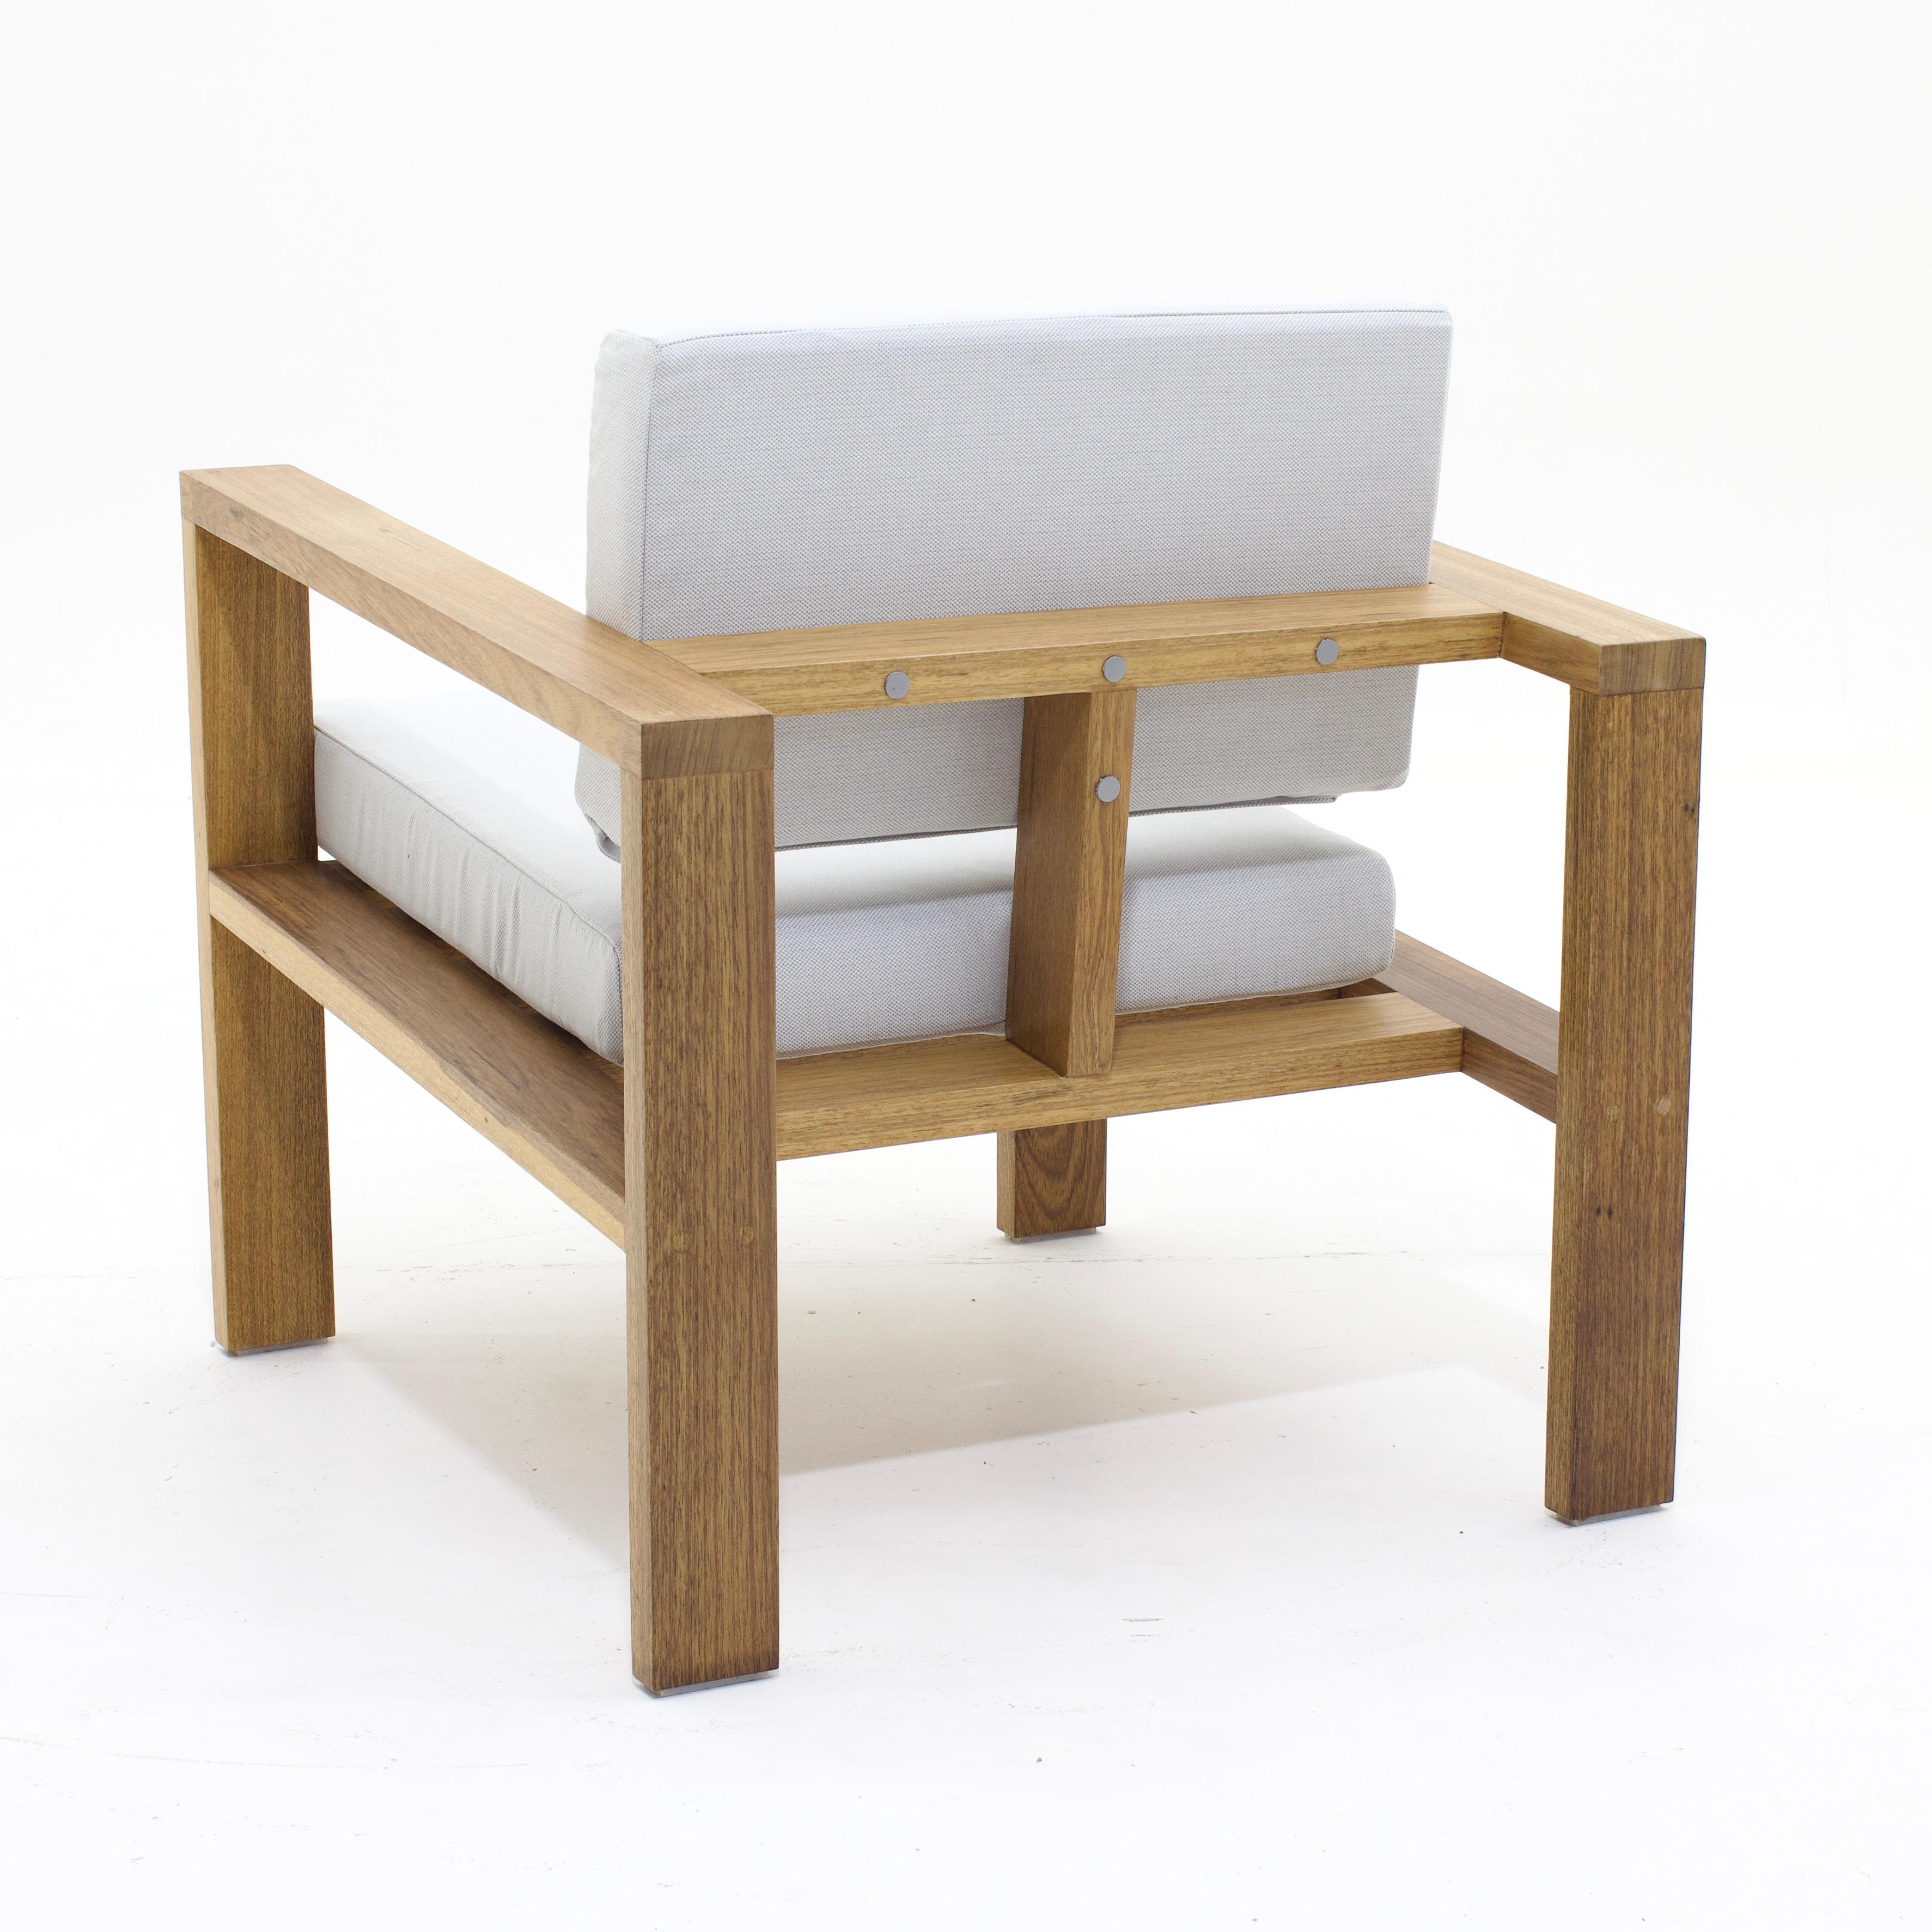 Ce fauteuil d'extérieur intemporel est conçu dans un raisonnement architectonique et géométrique. L'objectif est de créer une chaise légère et simple, avec des formes géométriques pures dont les éléments constituent son fonctionnement. Ses traverses